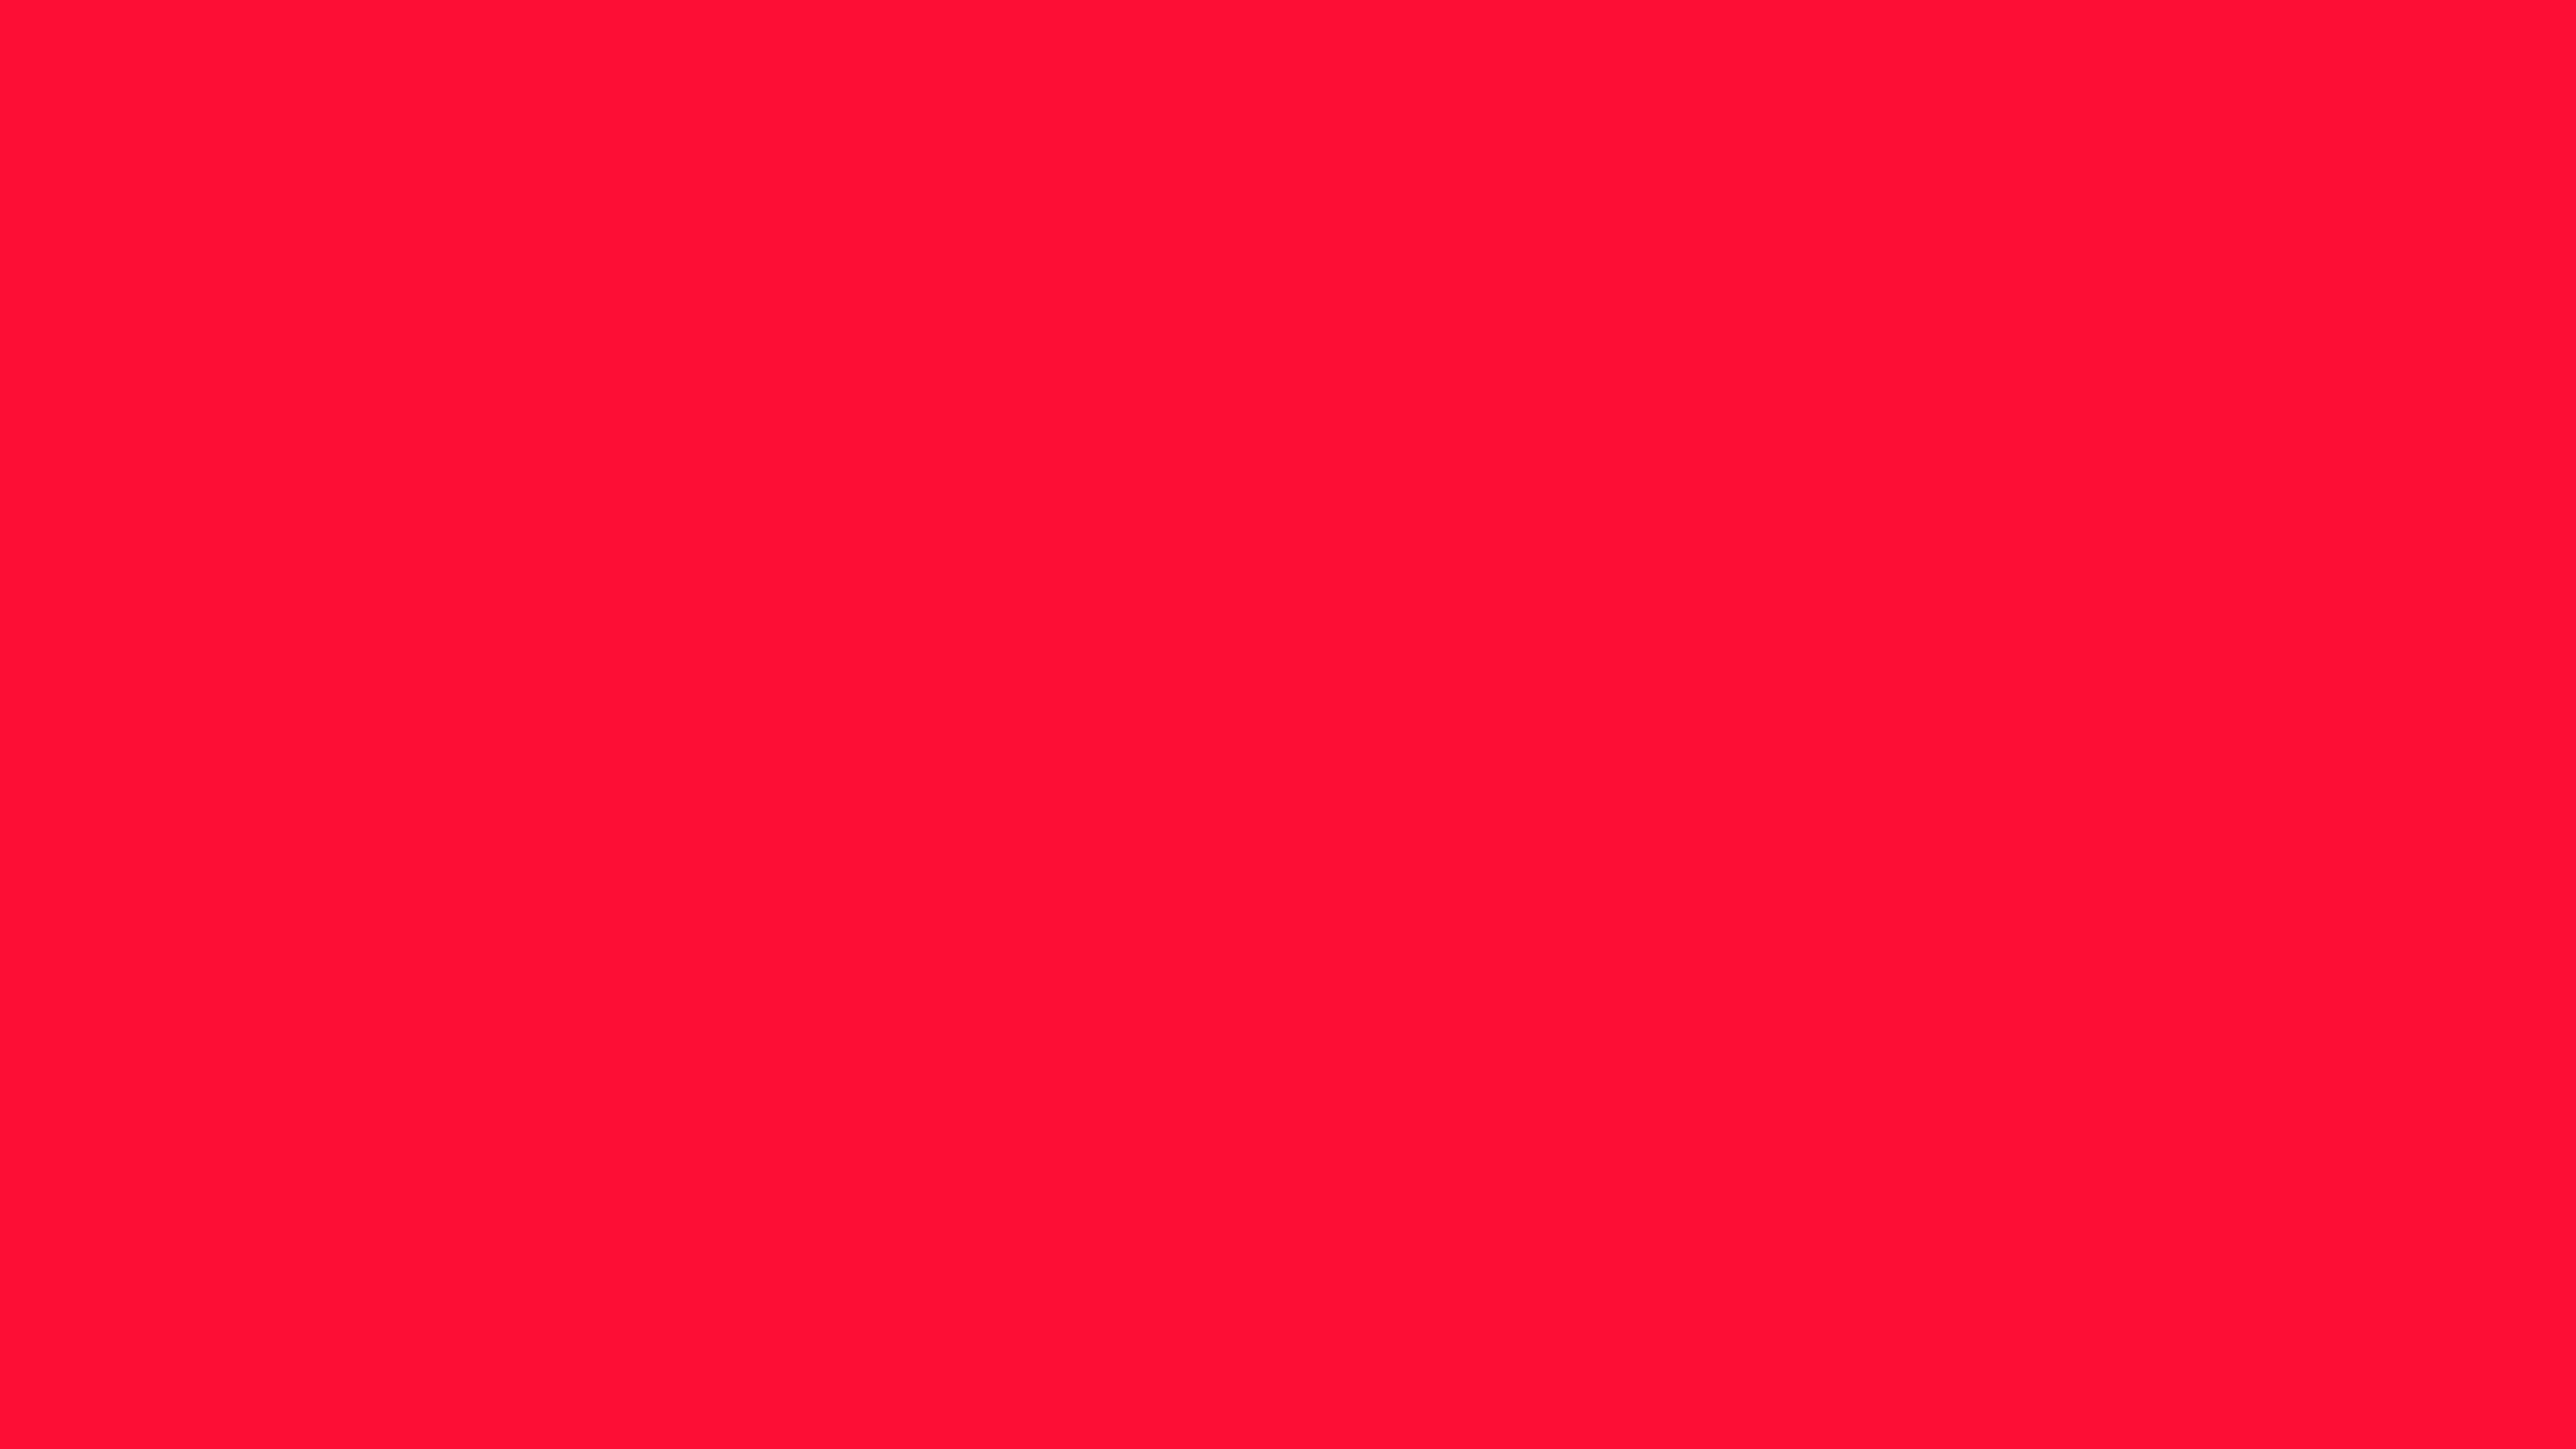 3840x2160 Scarlet Crayola Solid Color Background